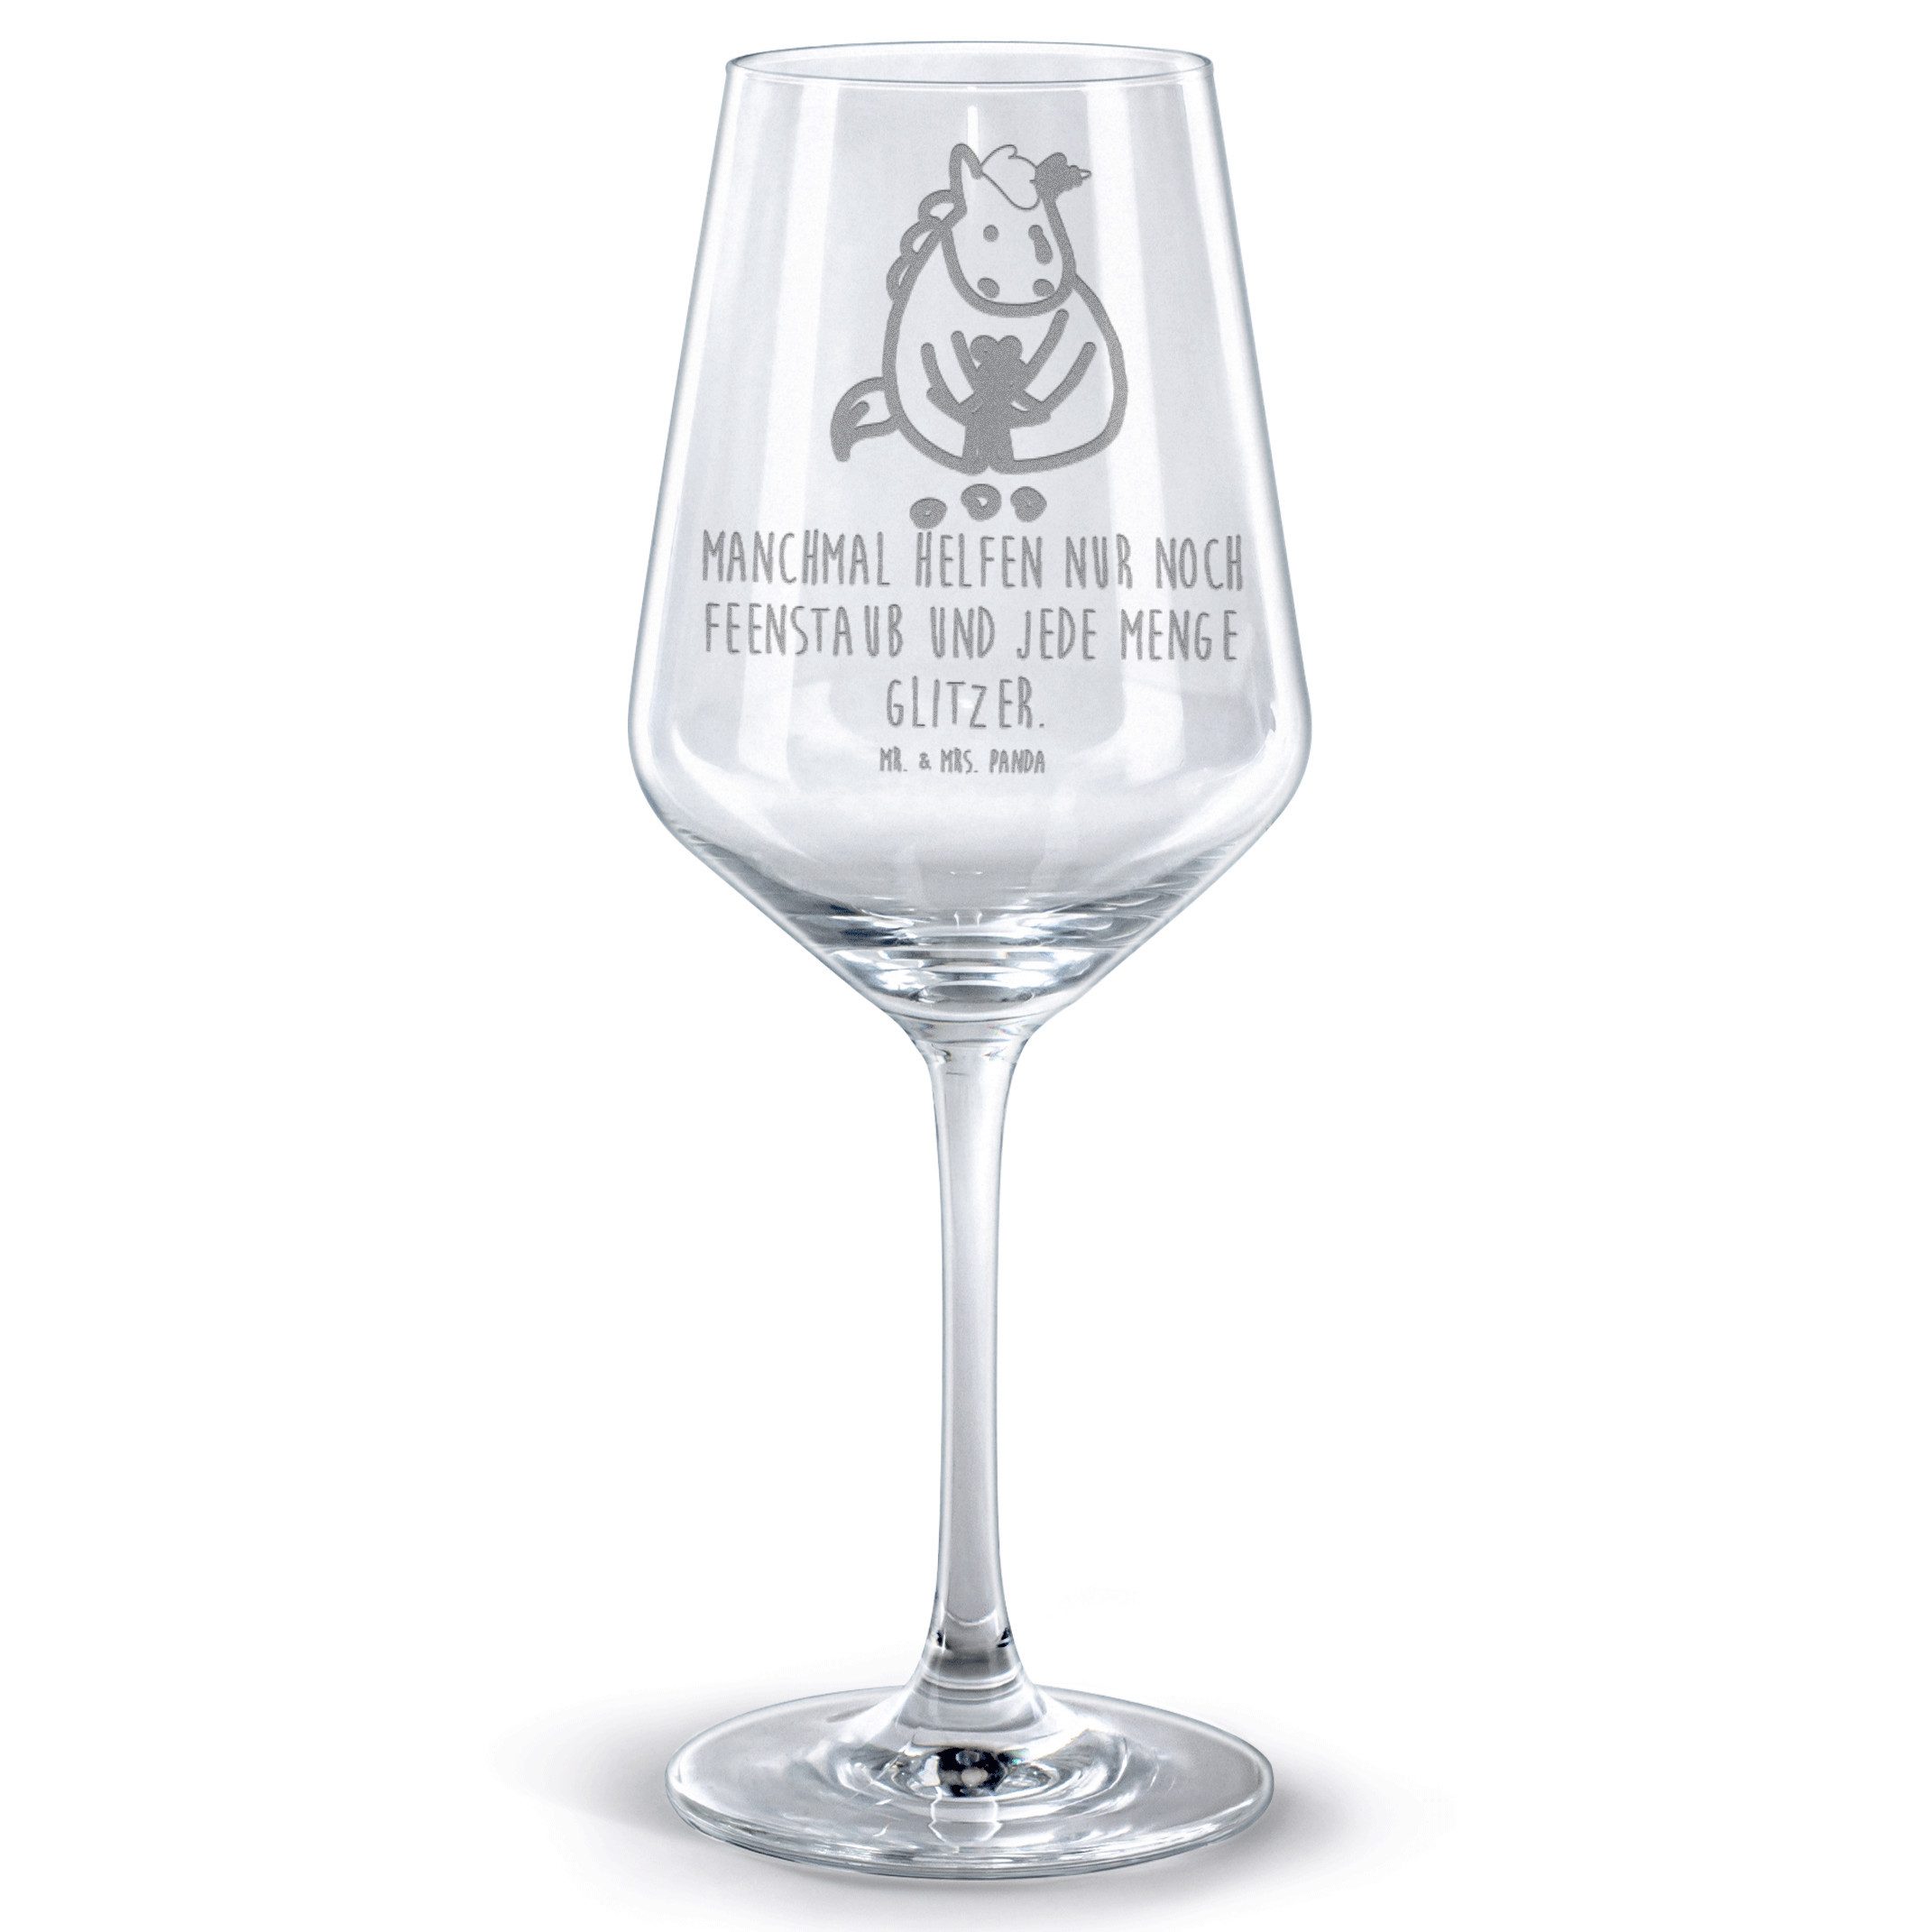 Mr. & Mrs. Panda Rotweinglas Einhorn Traurig - Transparent - Geschenk, Weinglas, Hochwertige Weina, Premium Glas, Unikat durch Gravur